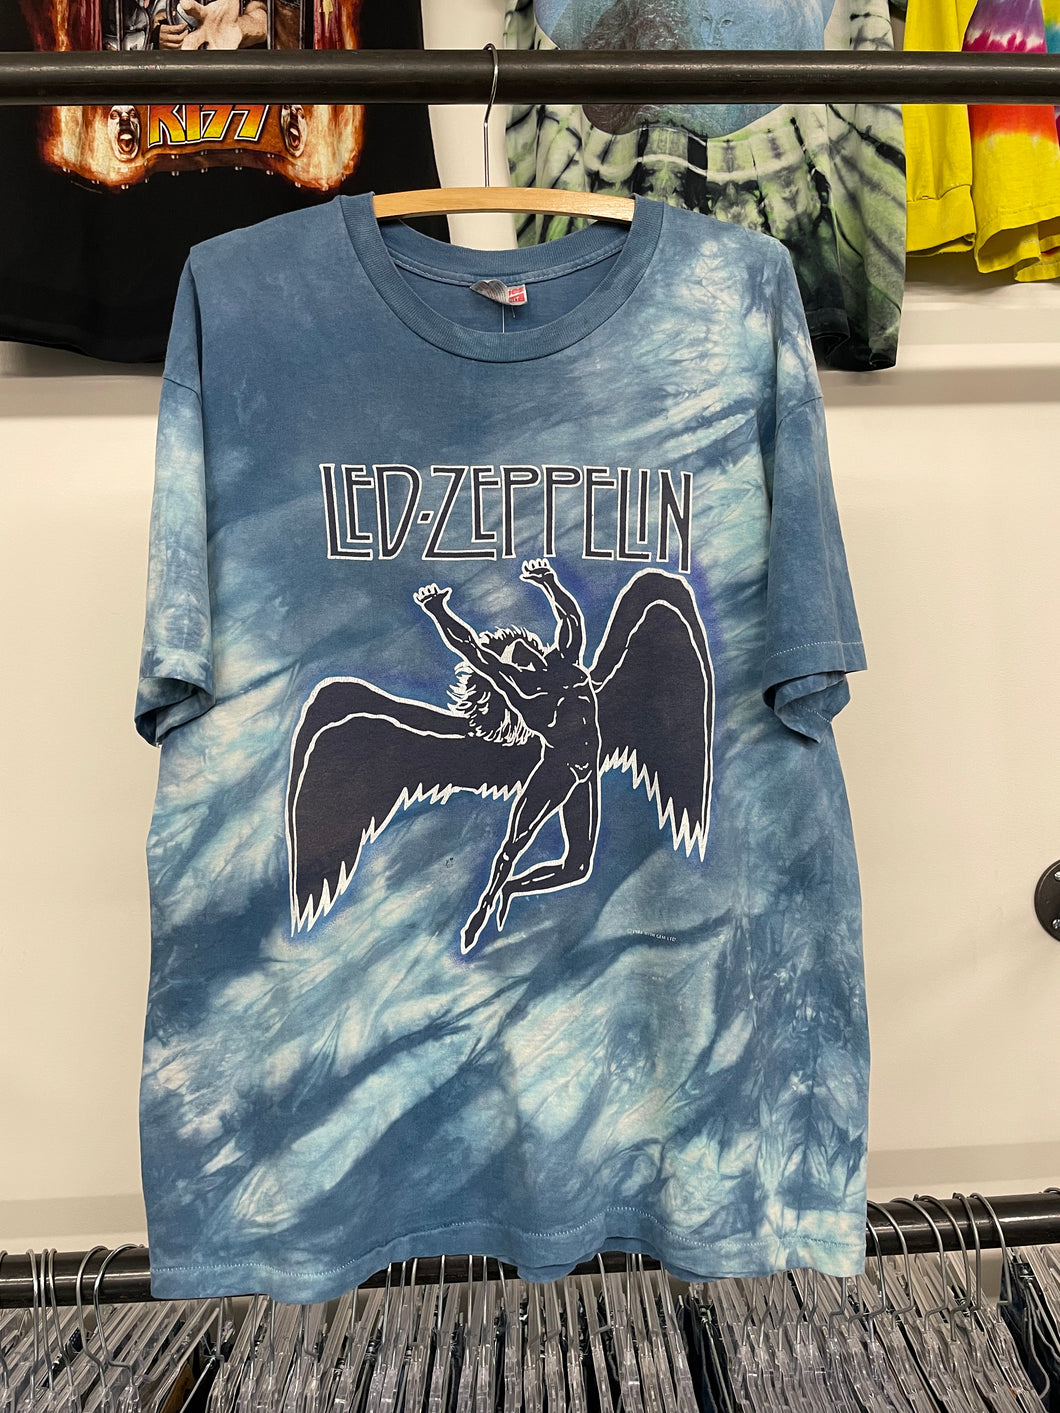 1984 Led Zeppelin shirt size XL